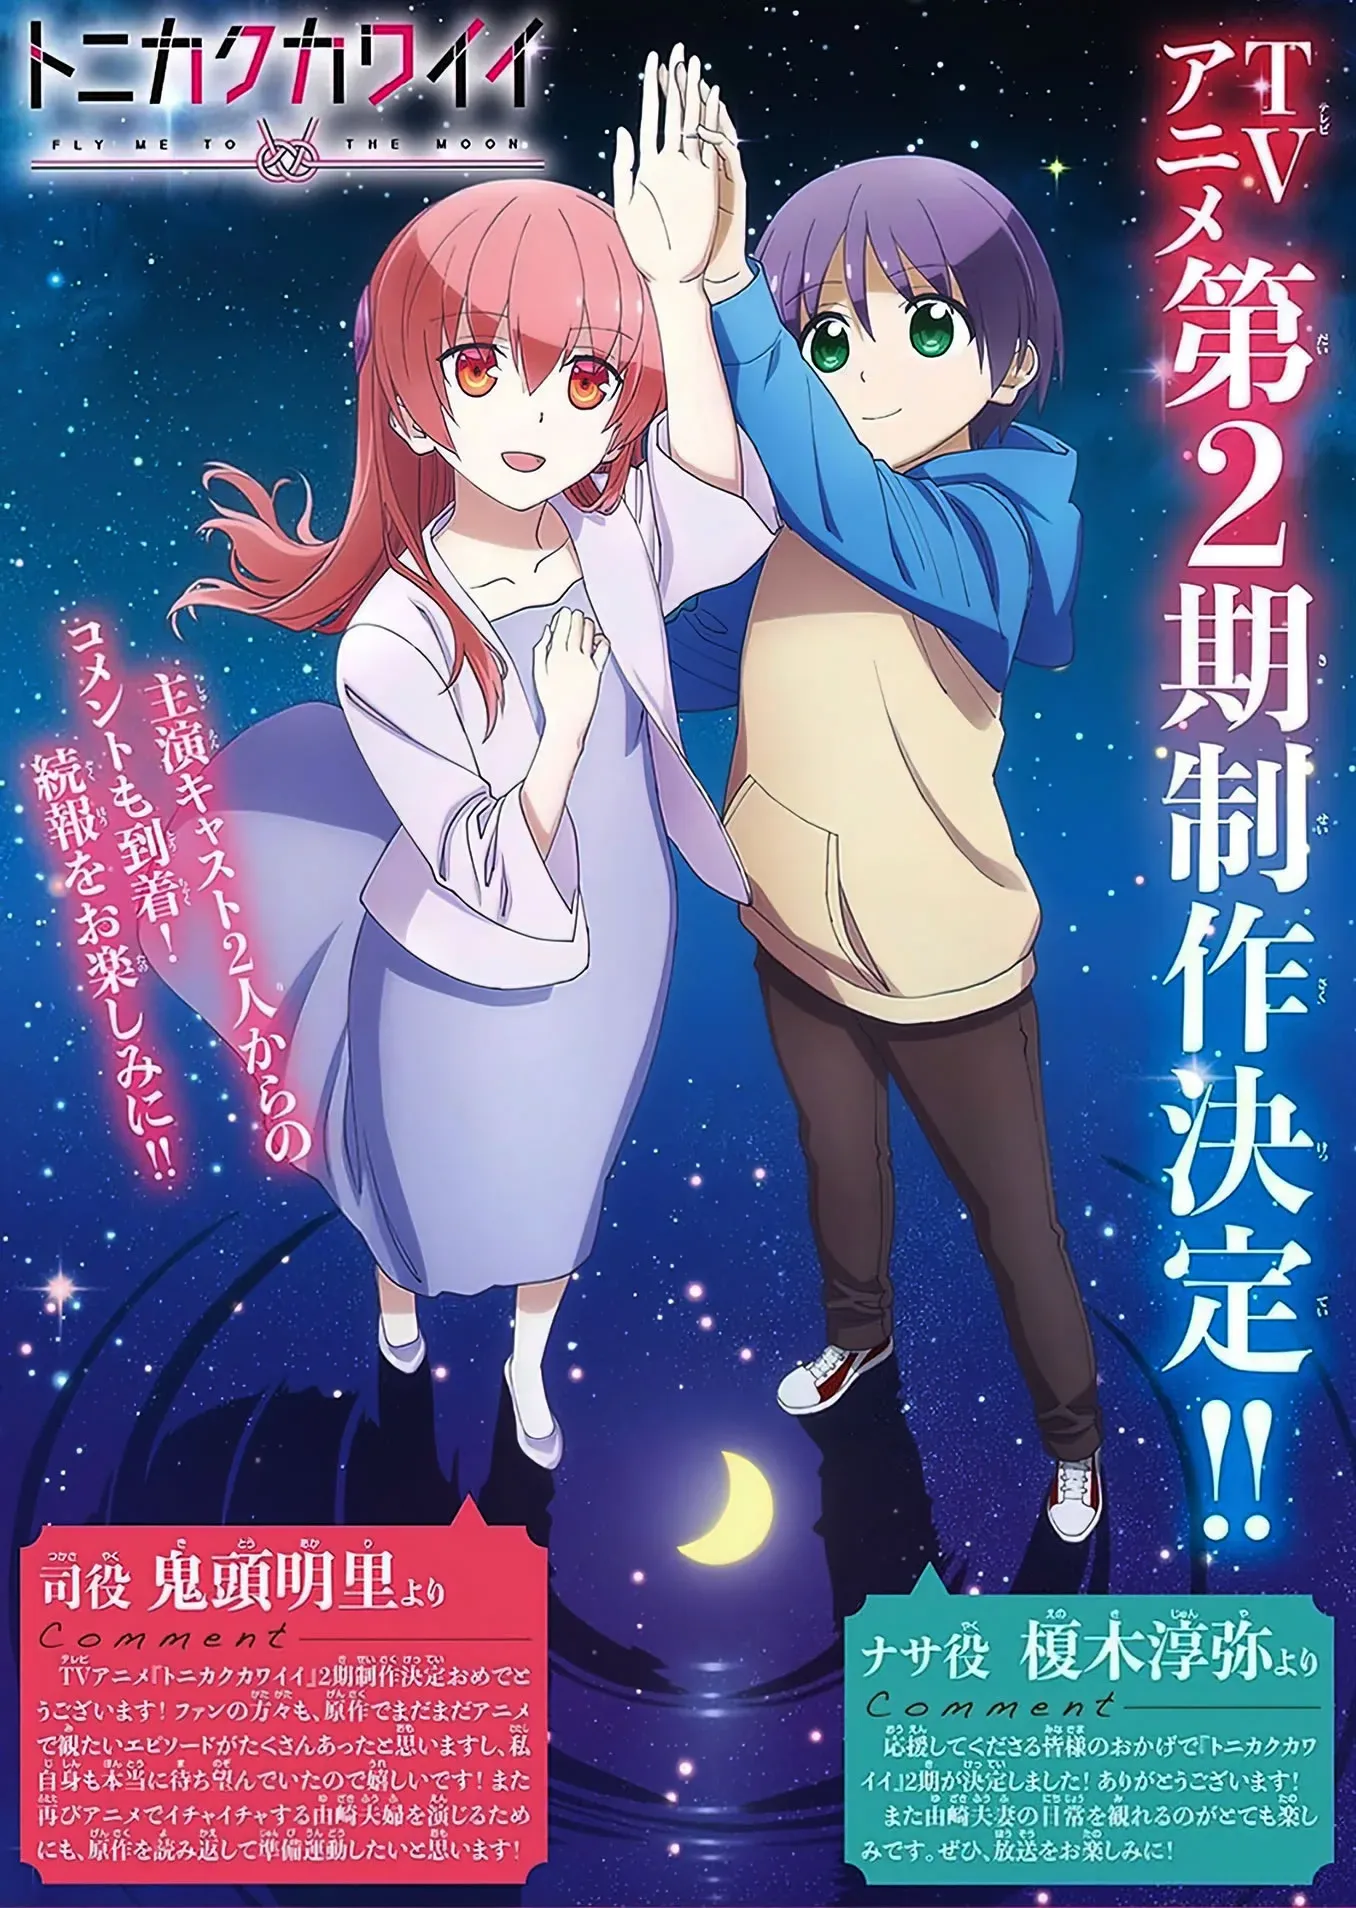 Vazamento Confirma produção da Segunda Temporada do Anime Tonikaku Kawaii